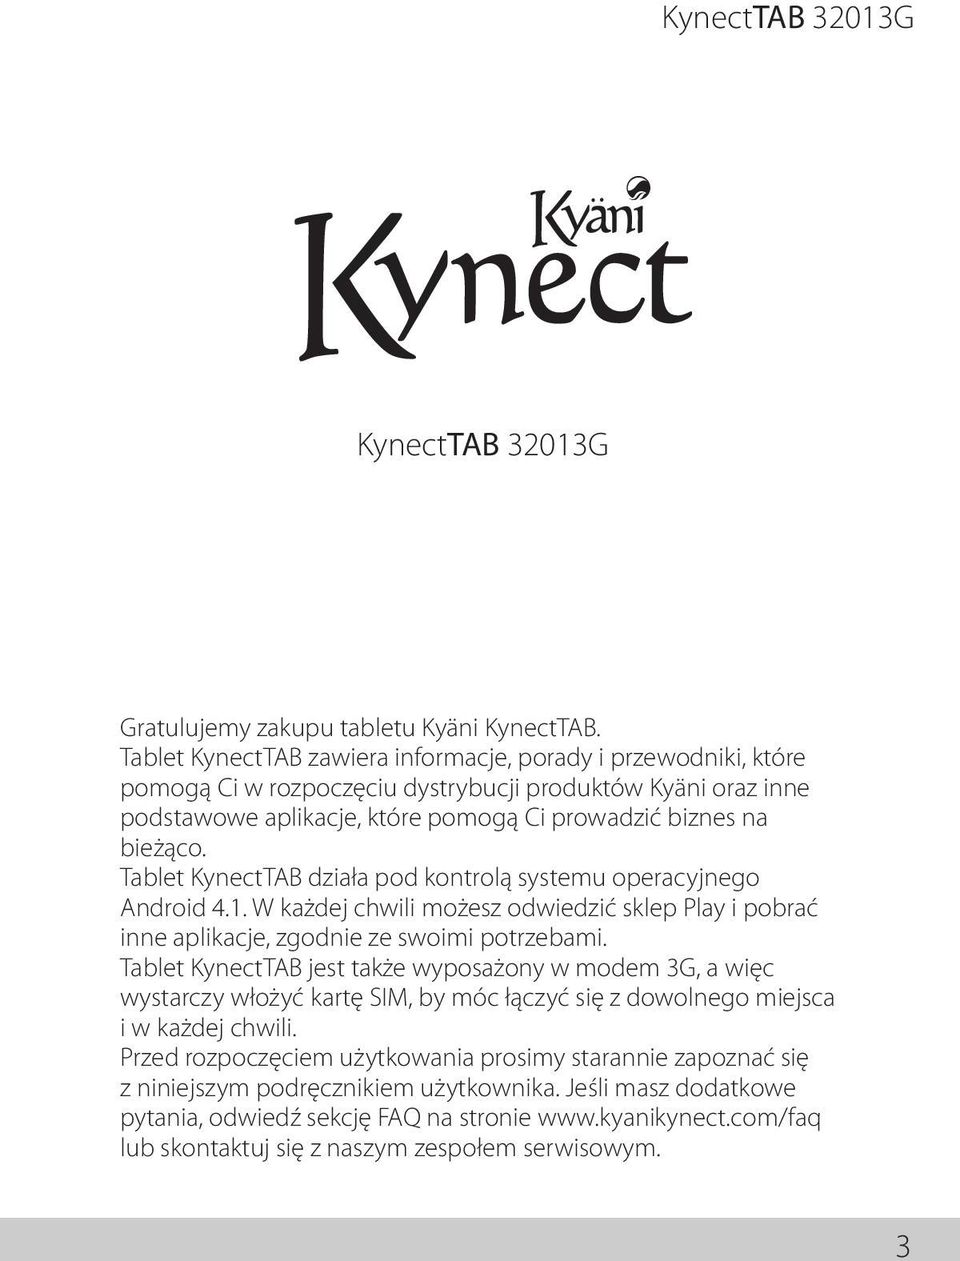 Tablet KynectTAB działa pod kontrolą systemu operacyjnego Android 4.1. W każdej chwili możesz odwiedzić sklep Play i pobrać inne aplikacje, zgodnie ze swoimi potrzebami.